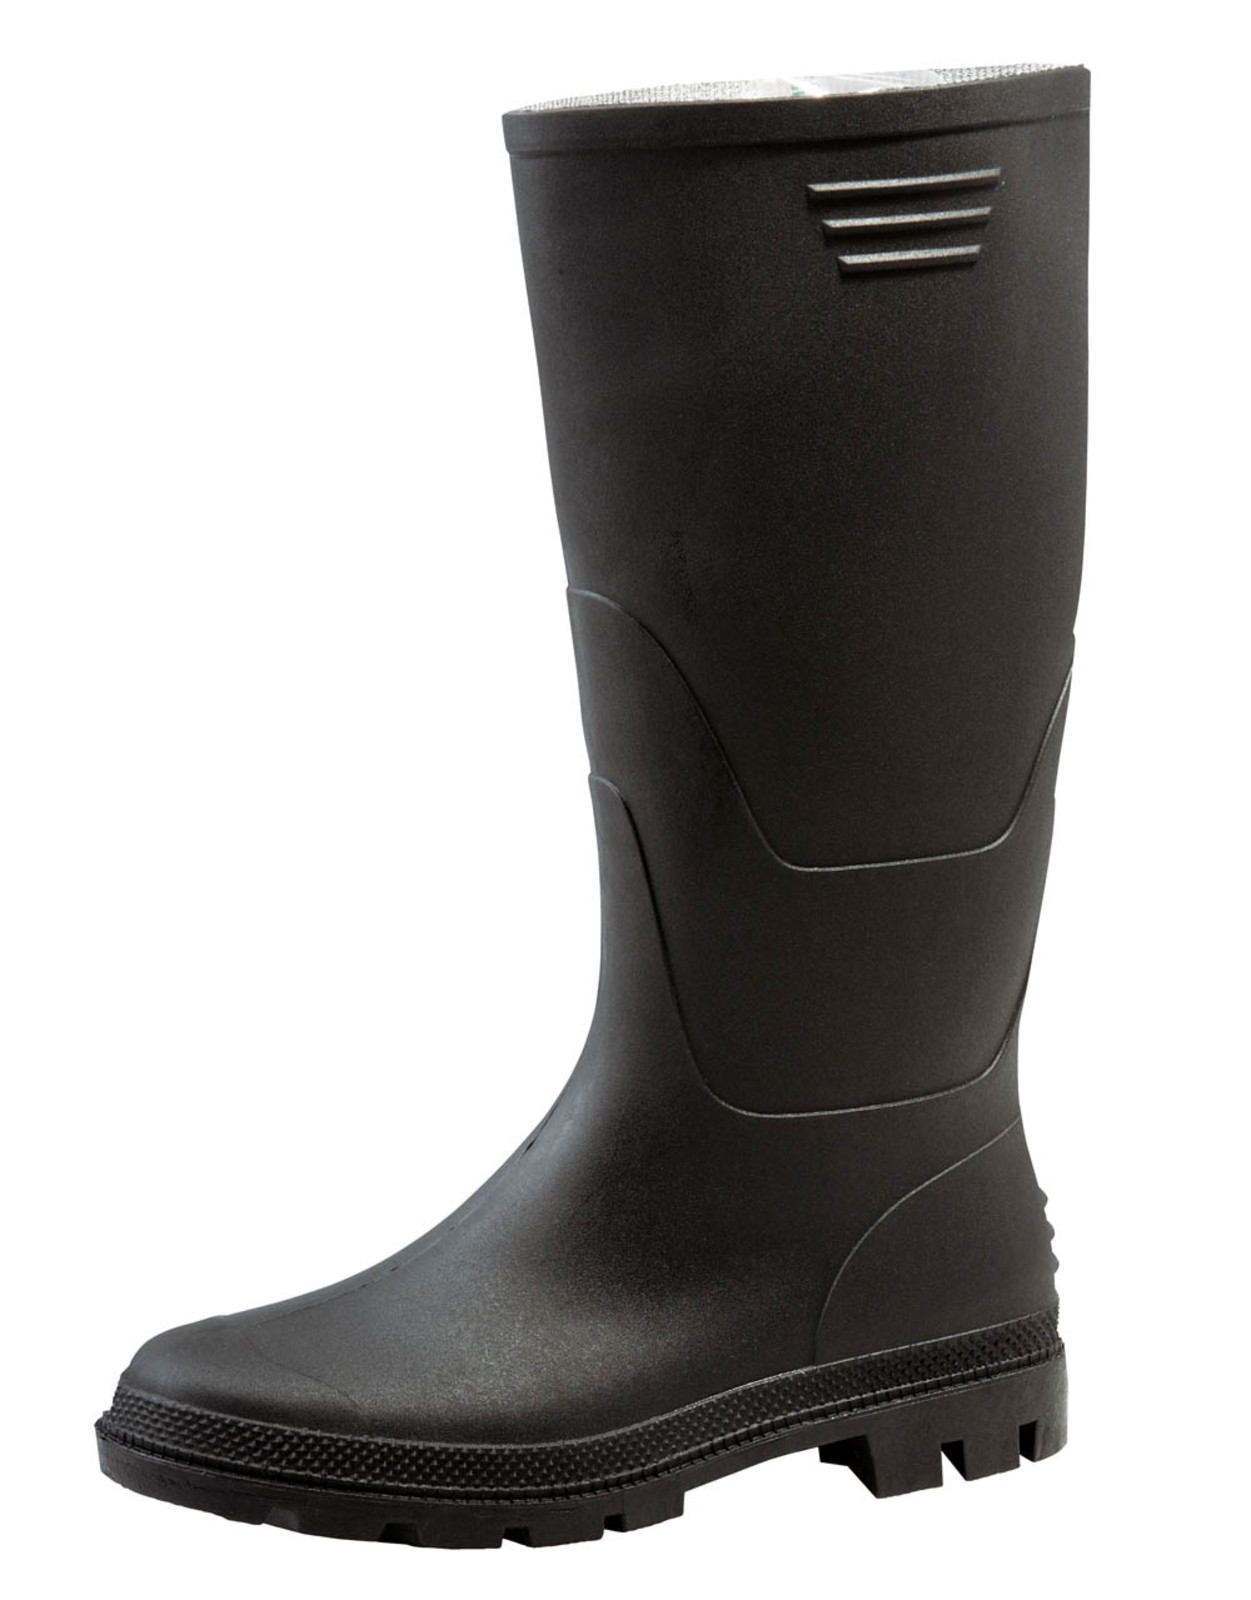 Gumáky Boots Ginocchio PVC - veľkosť: 48, farba: čierna